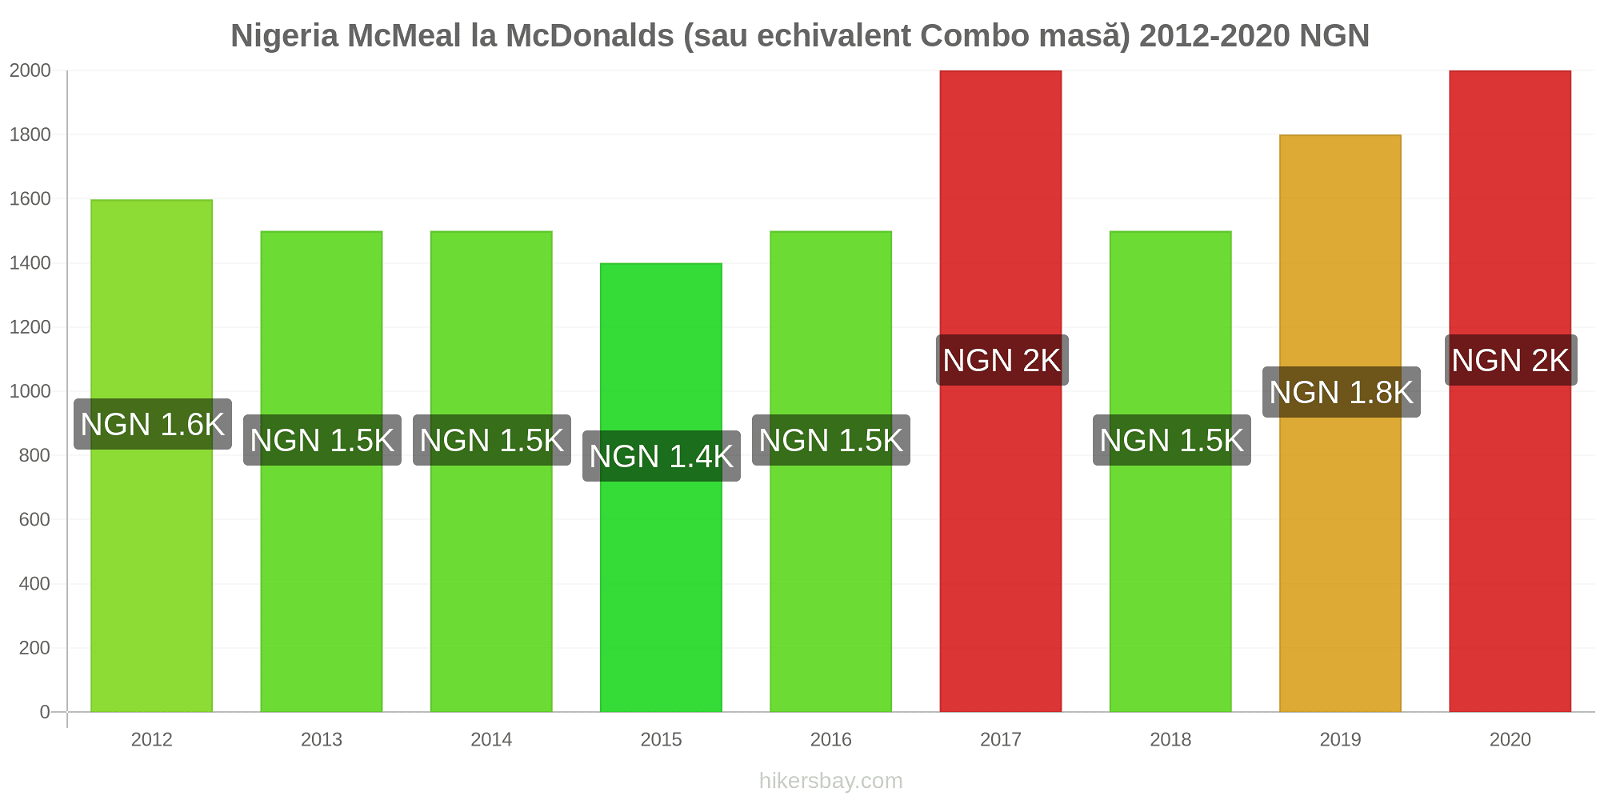 Nigeria modificări de preț McMeal la McDonalds (sau echivalent Combo masă) hikersbay.com